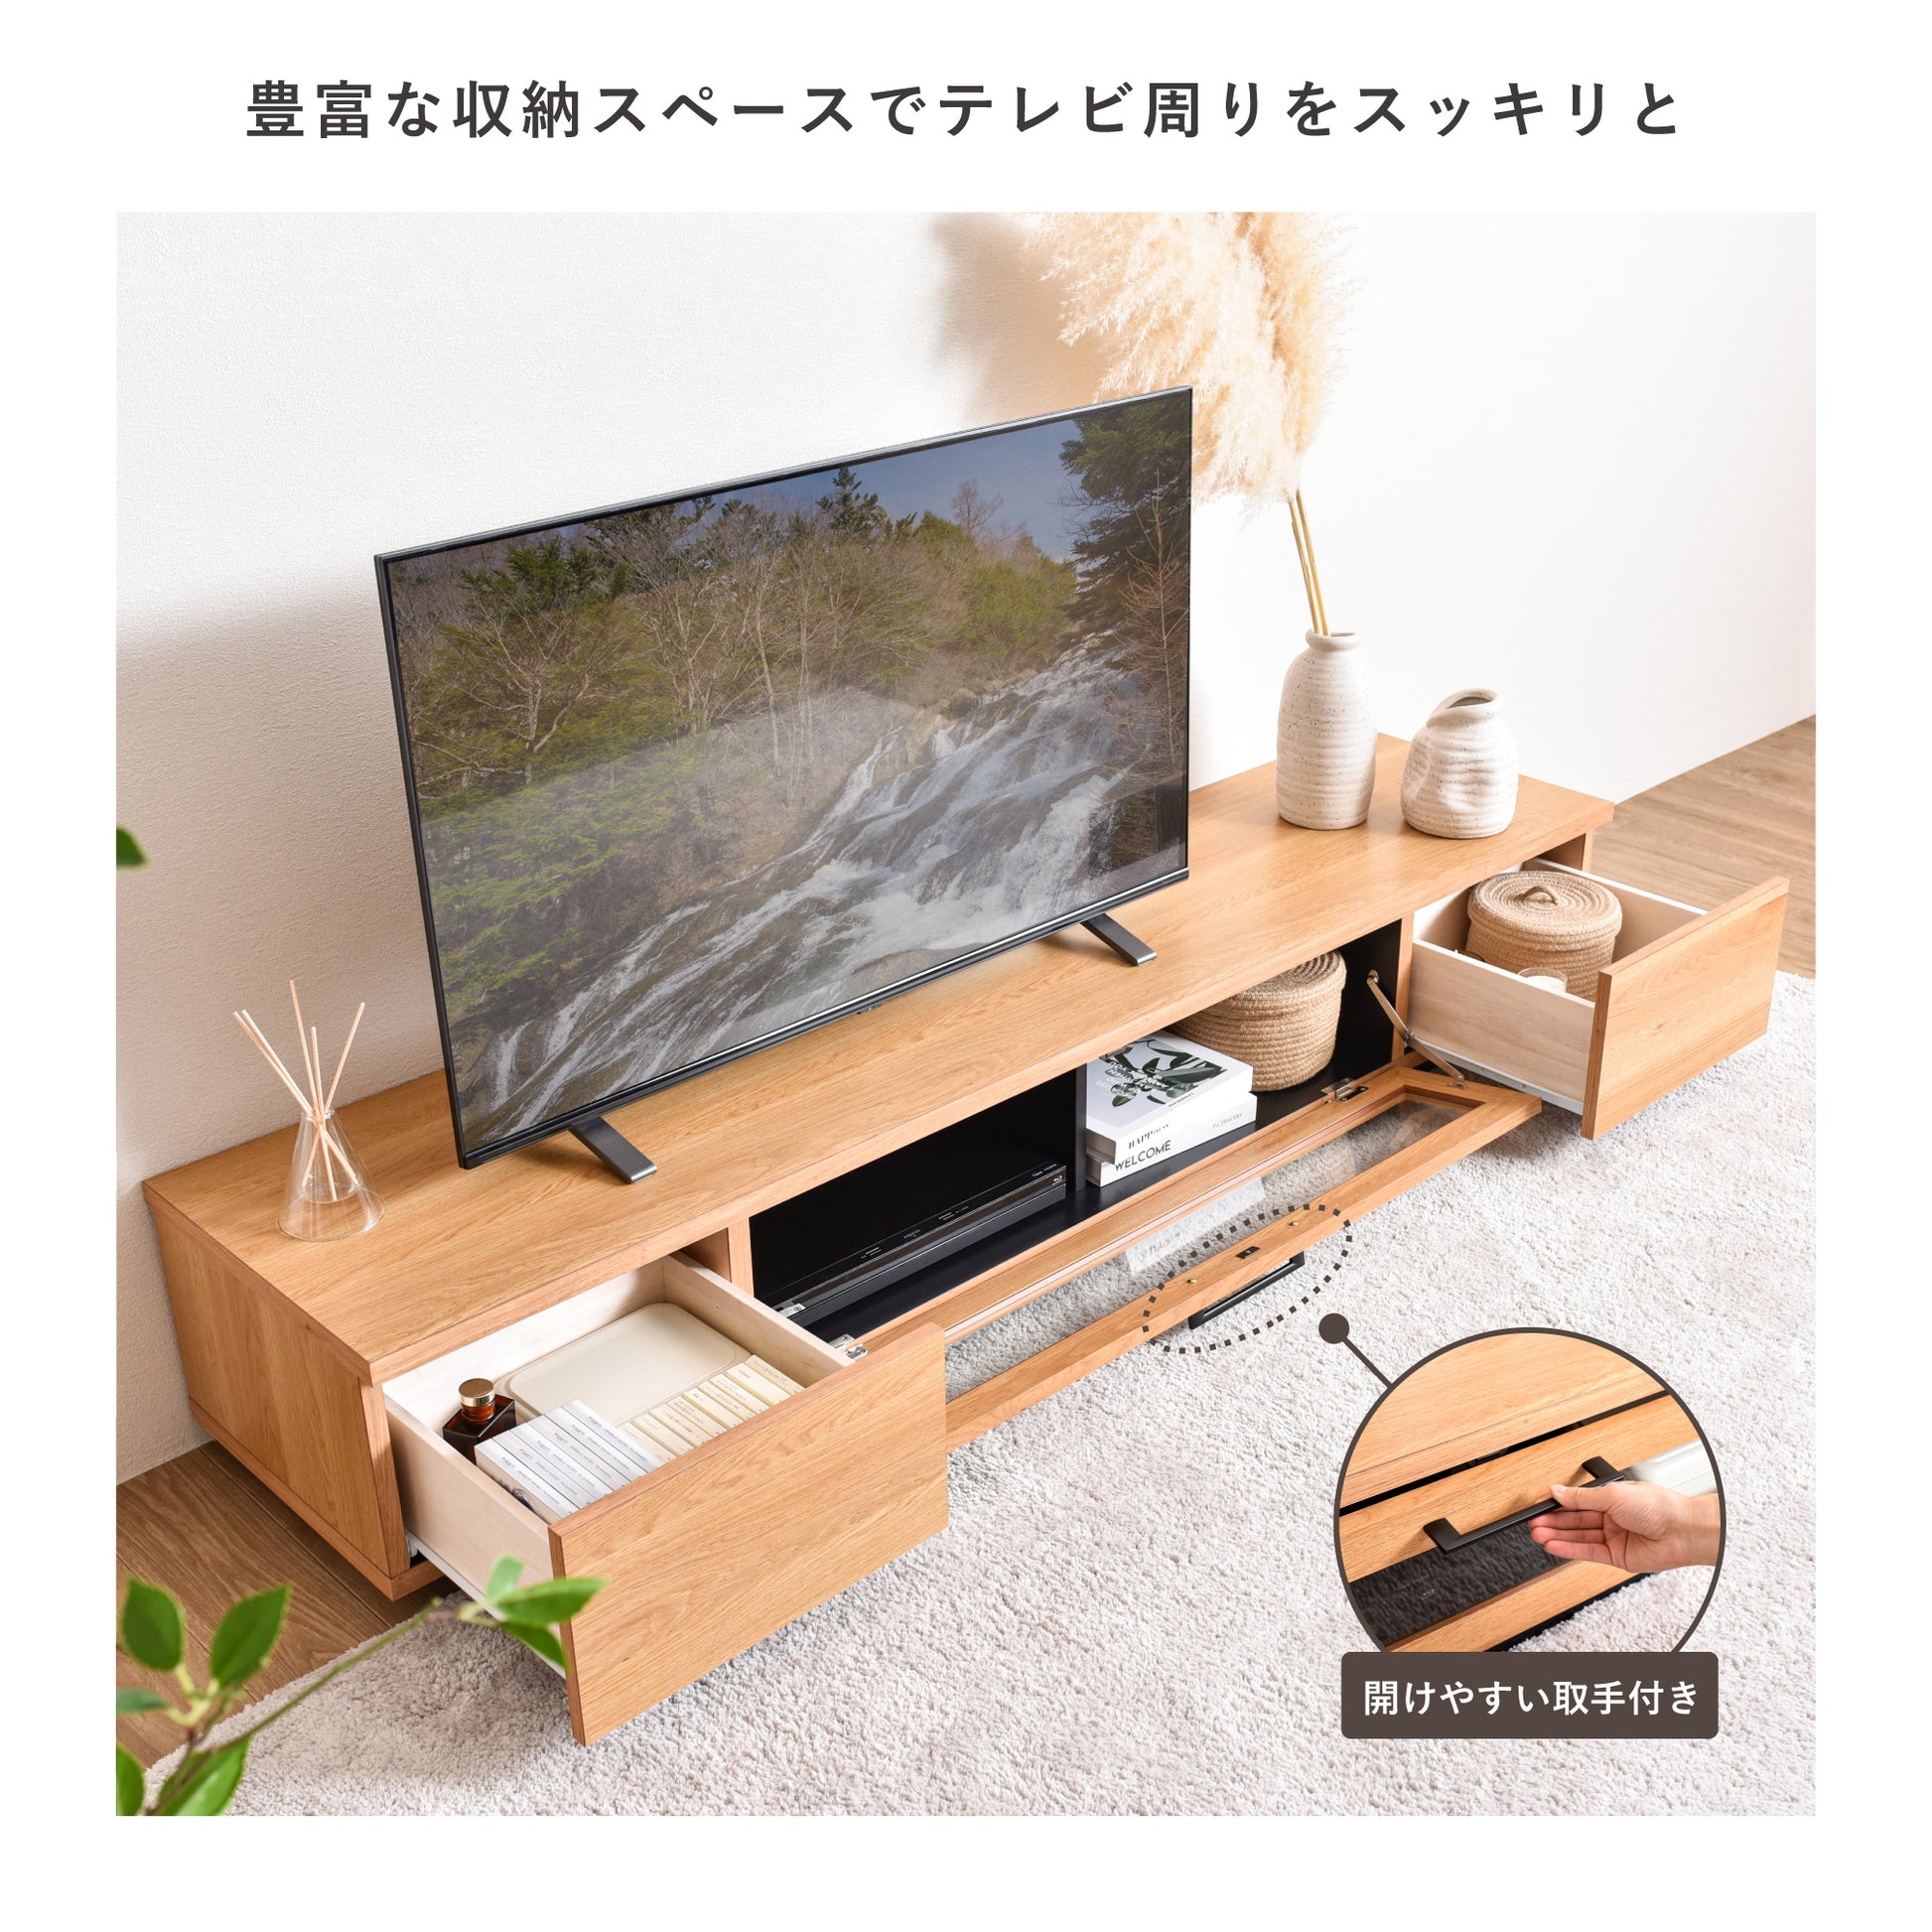 【新品/送料無料】収納TVラック テレビボード ローボード テレビ台